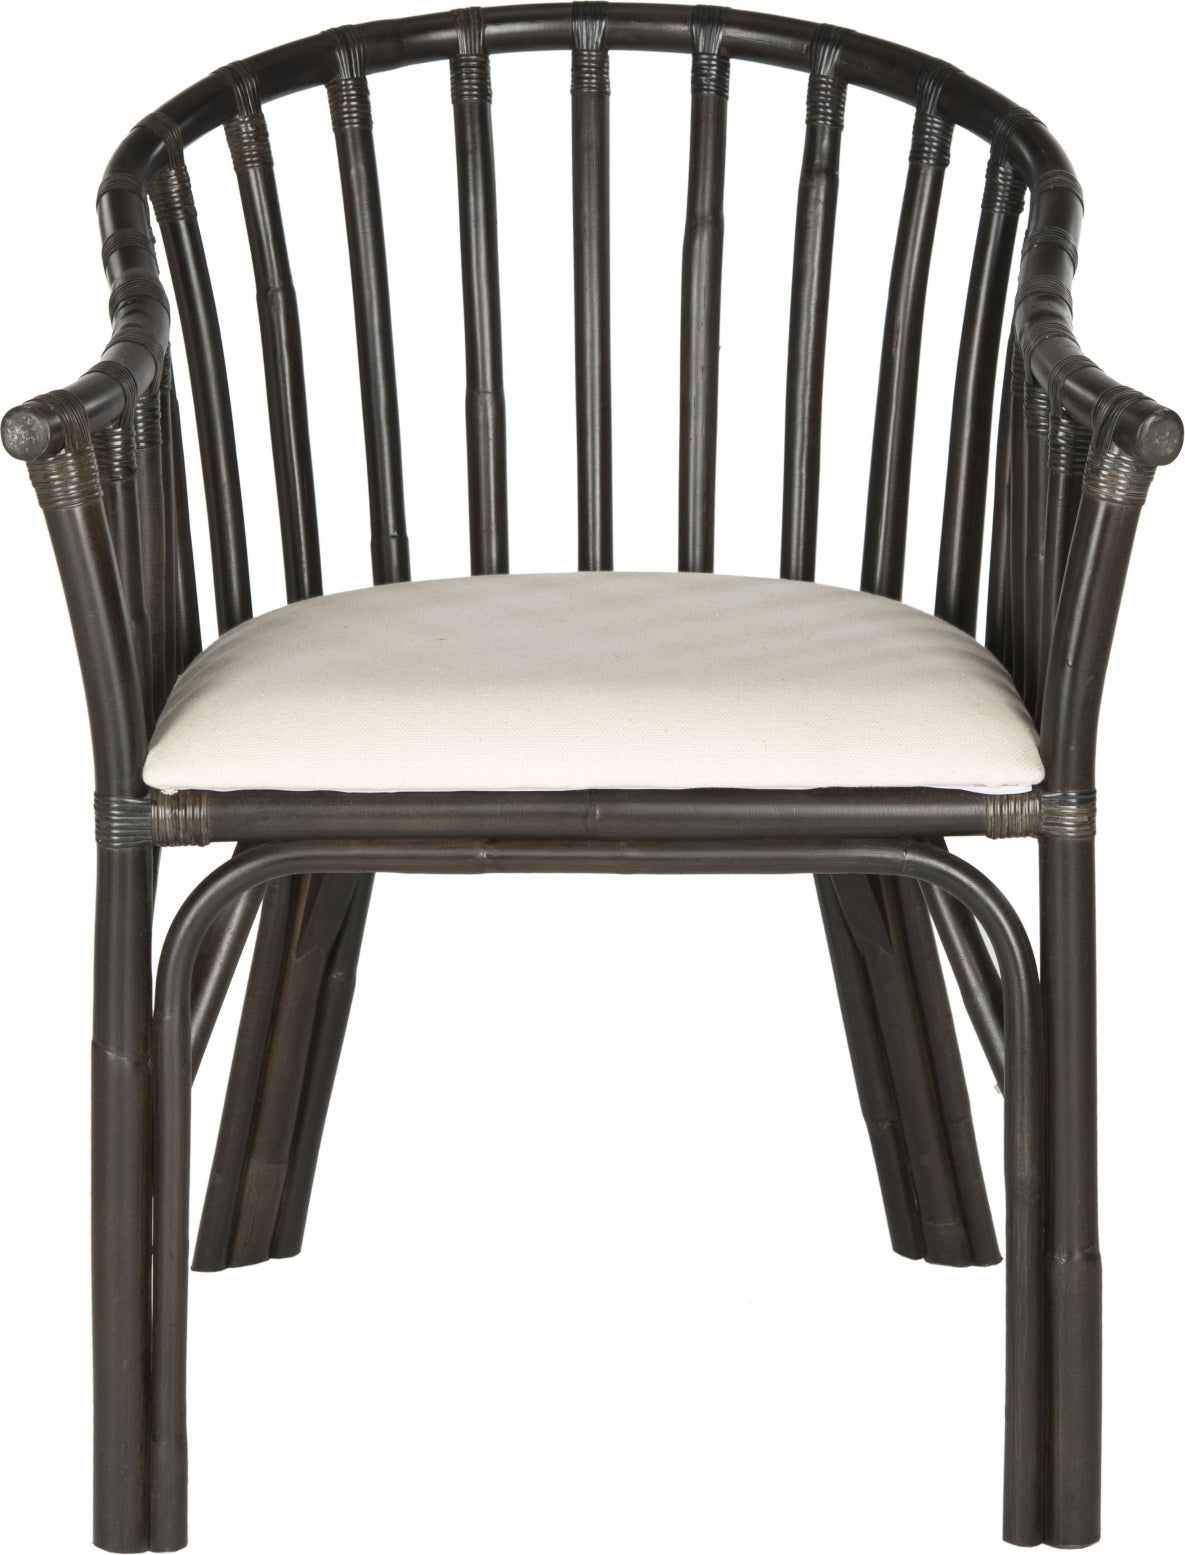 Safavieh Gino Arm Chair Black and White Furniture main image